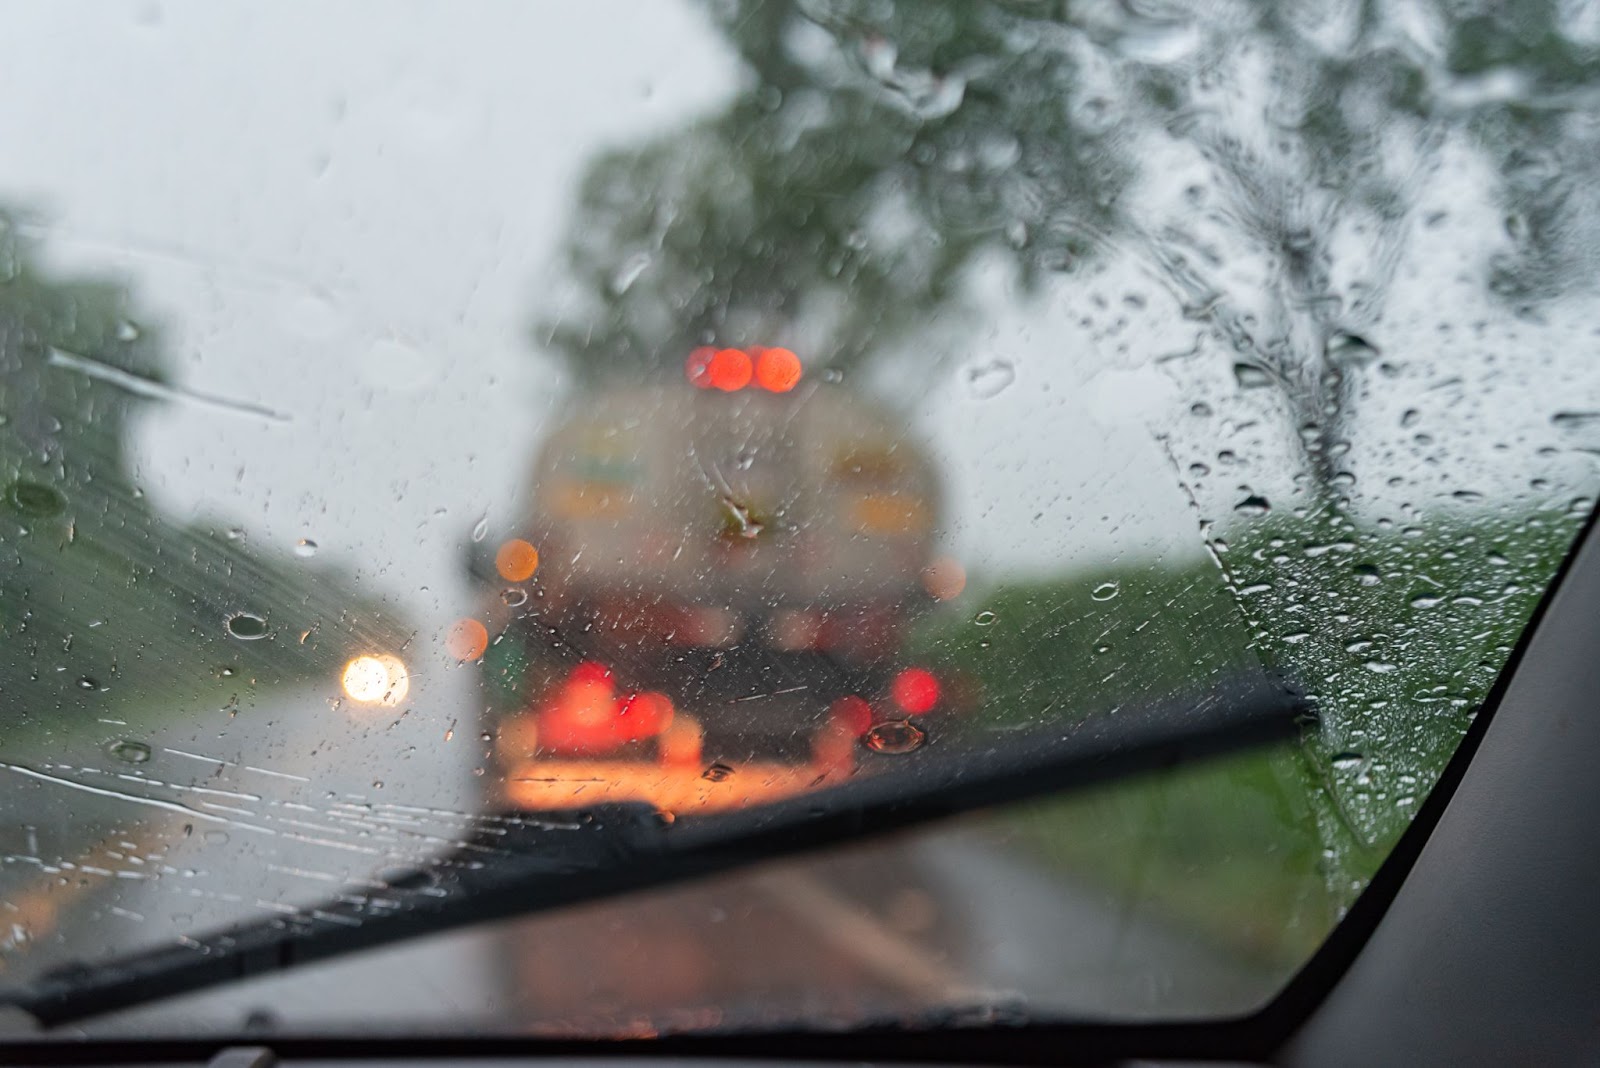 A imagem em close-up mostra a visão de dentro de um carro, com o vidro da frente embaçado por dirigir na chuva. Na frente do carro, é possível ver um caminhão na estrada desfocado.